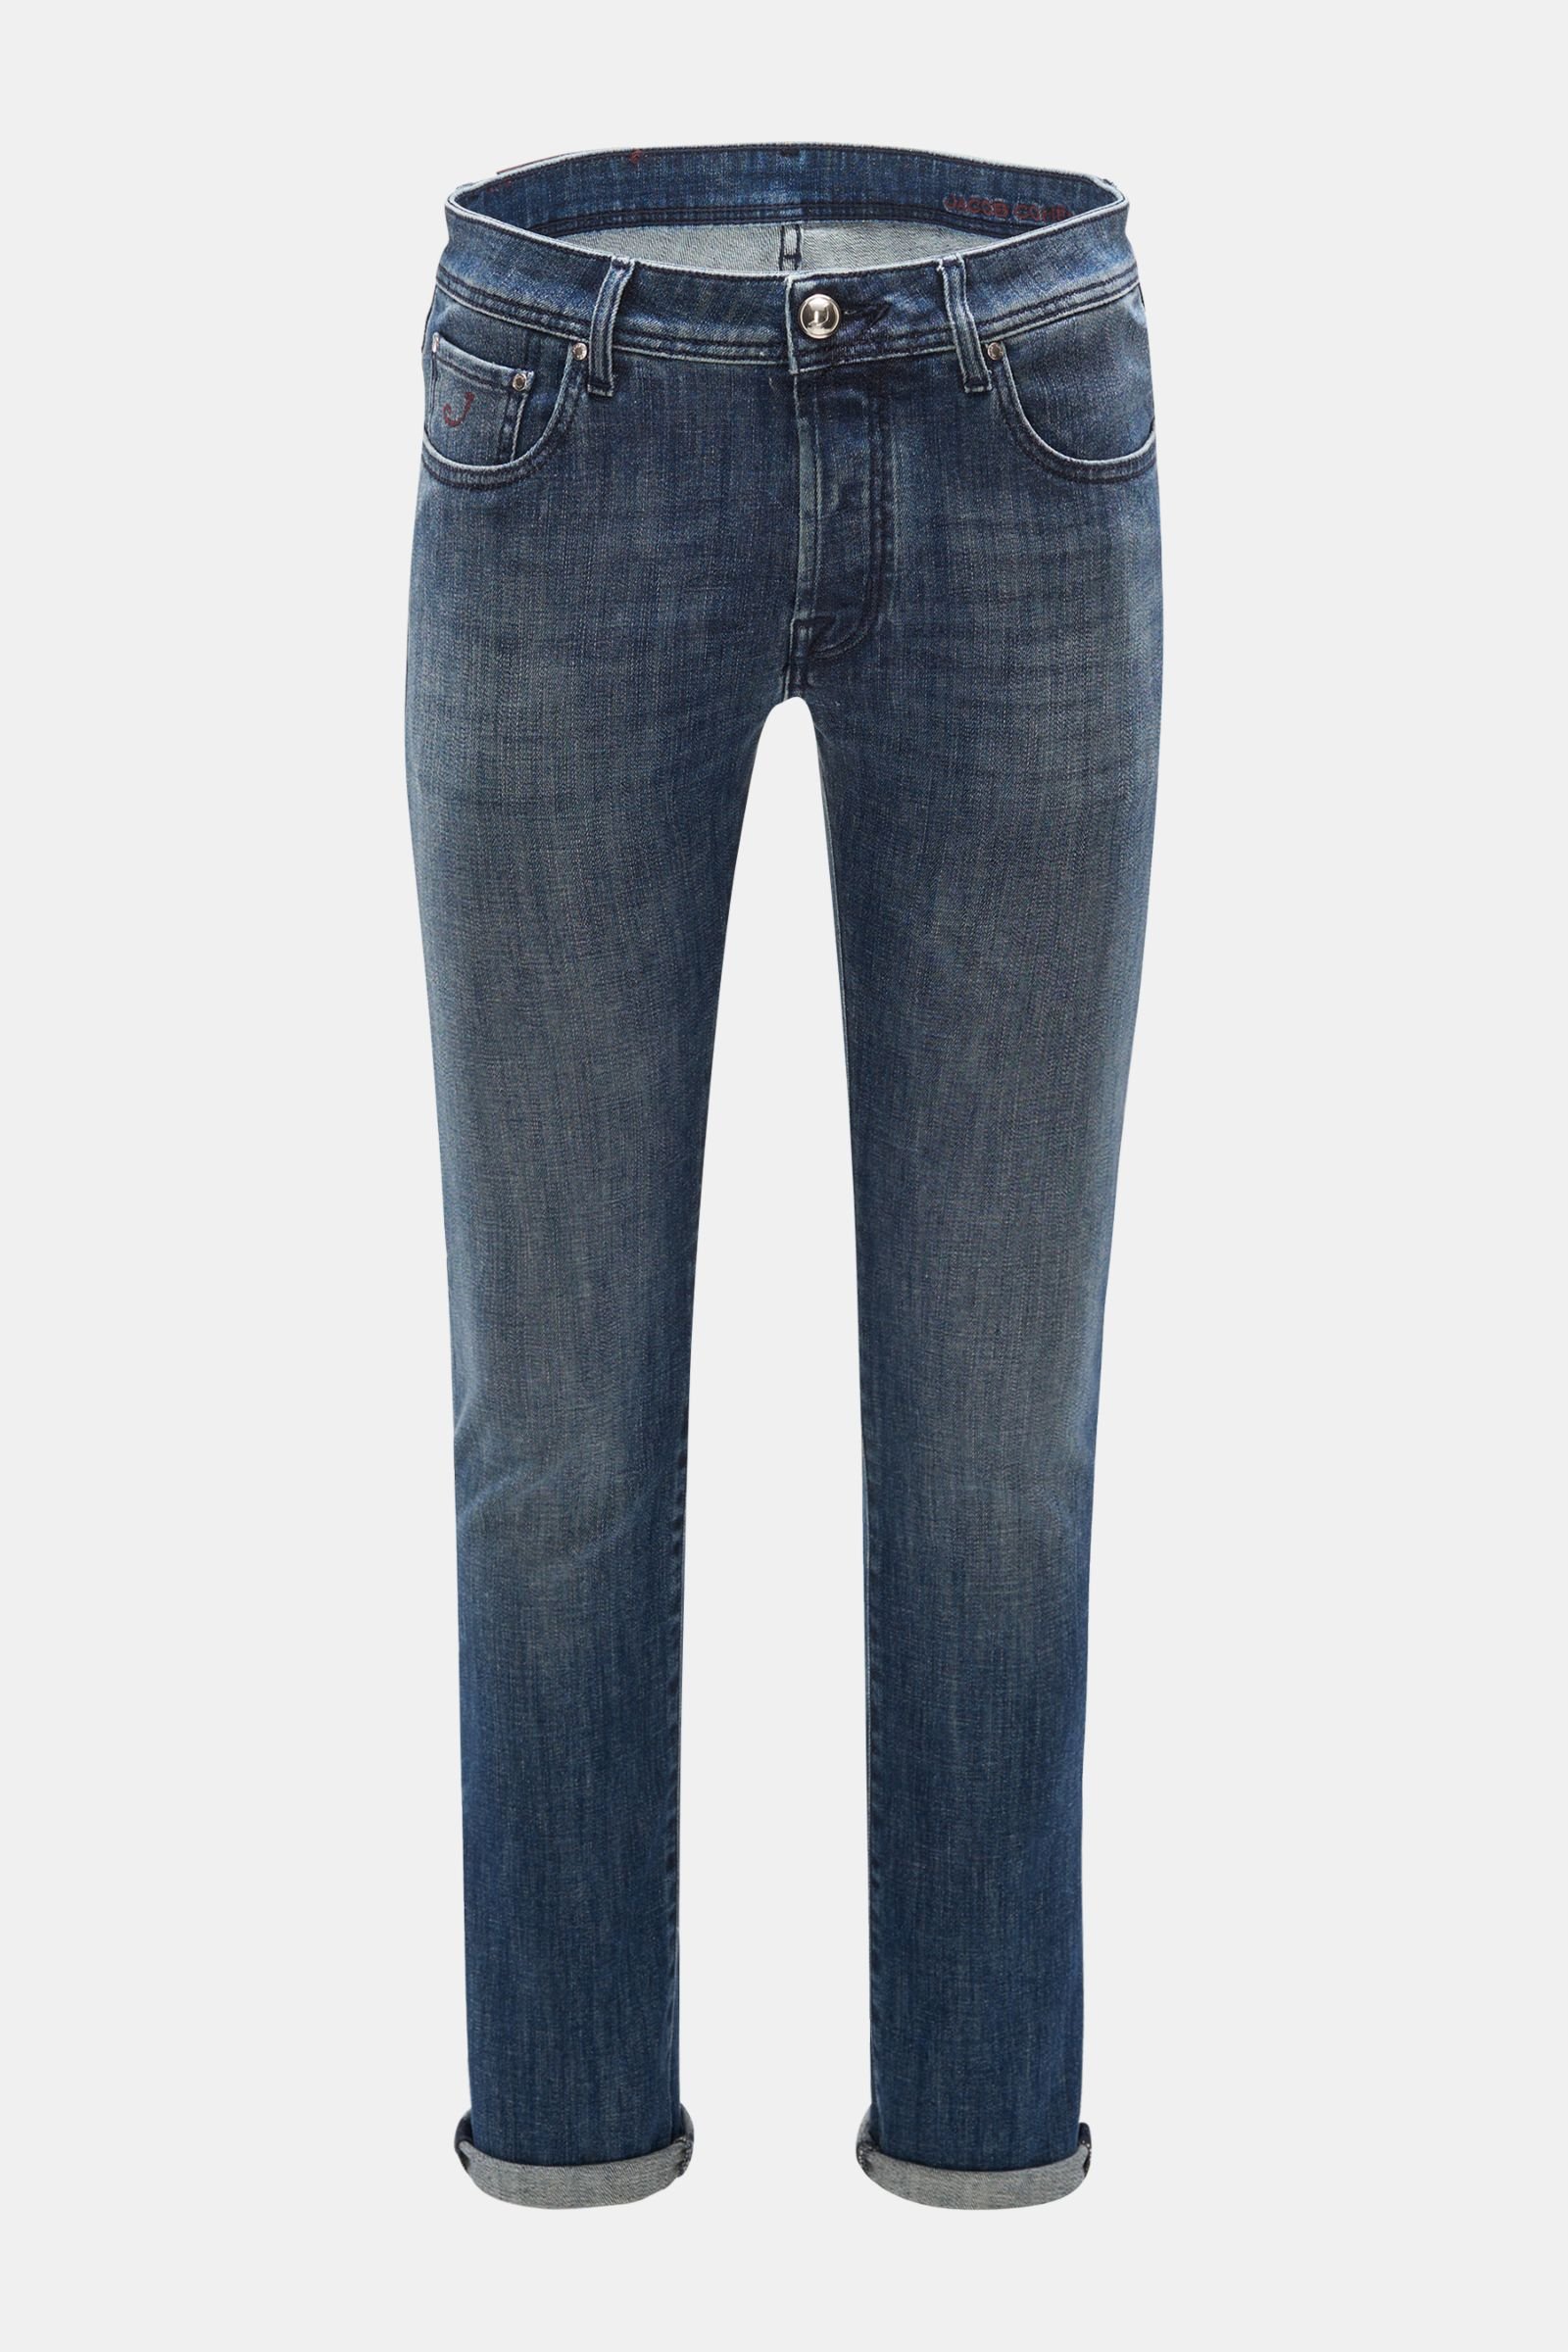 Jeans 'J688 Comfort Slim Fit' grey-blue